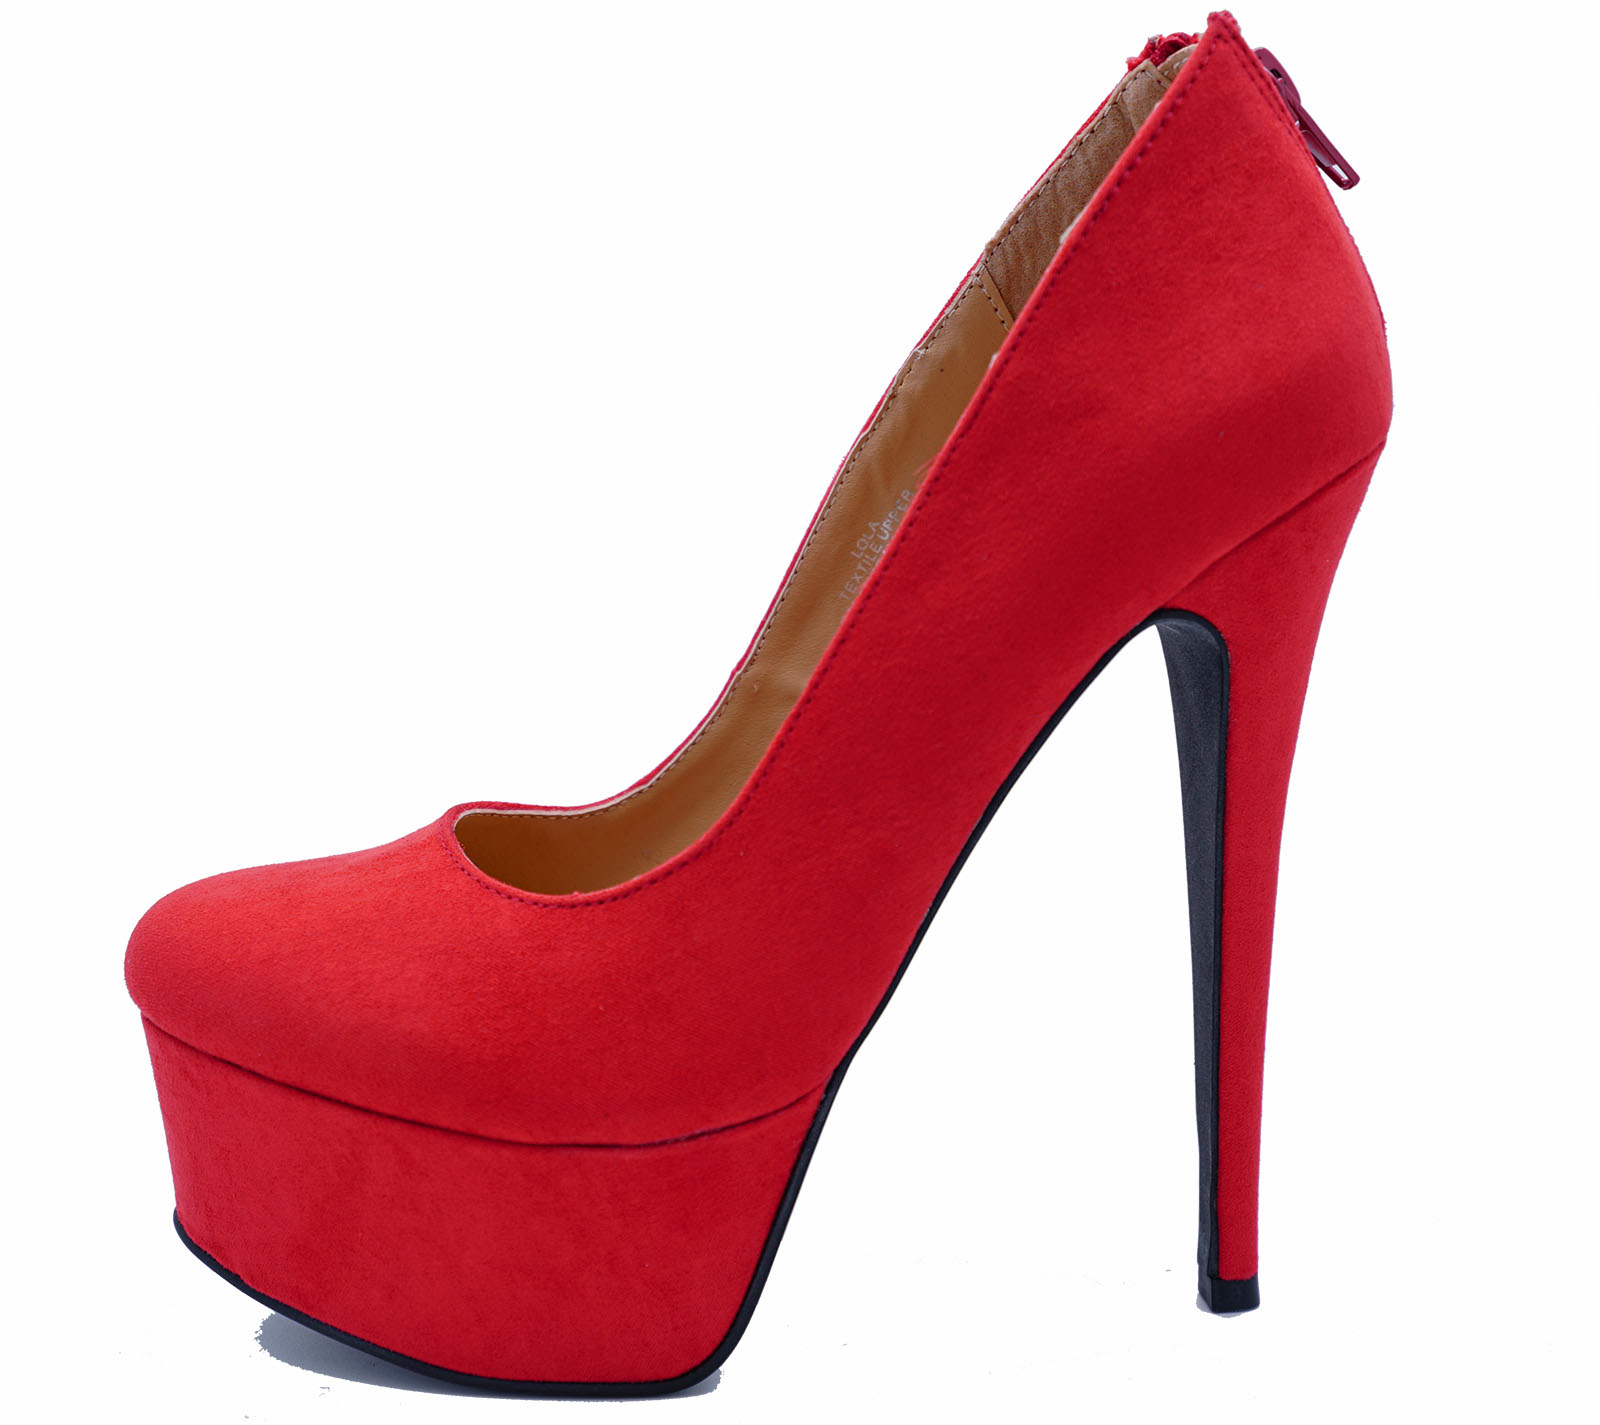 Red heeled shoes designer